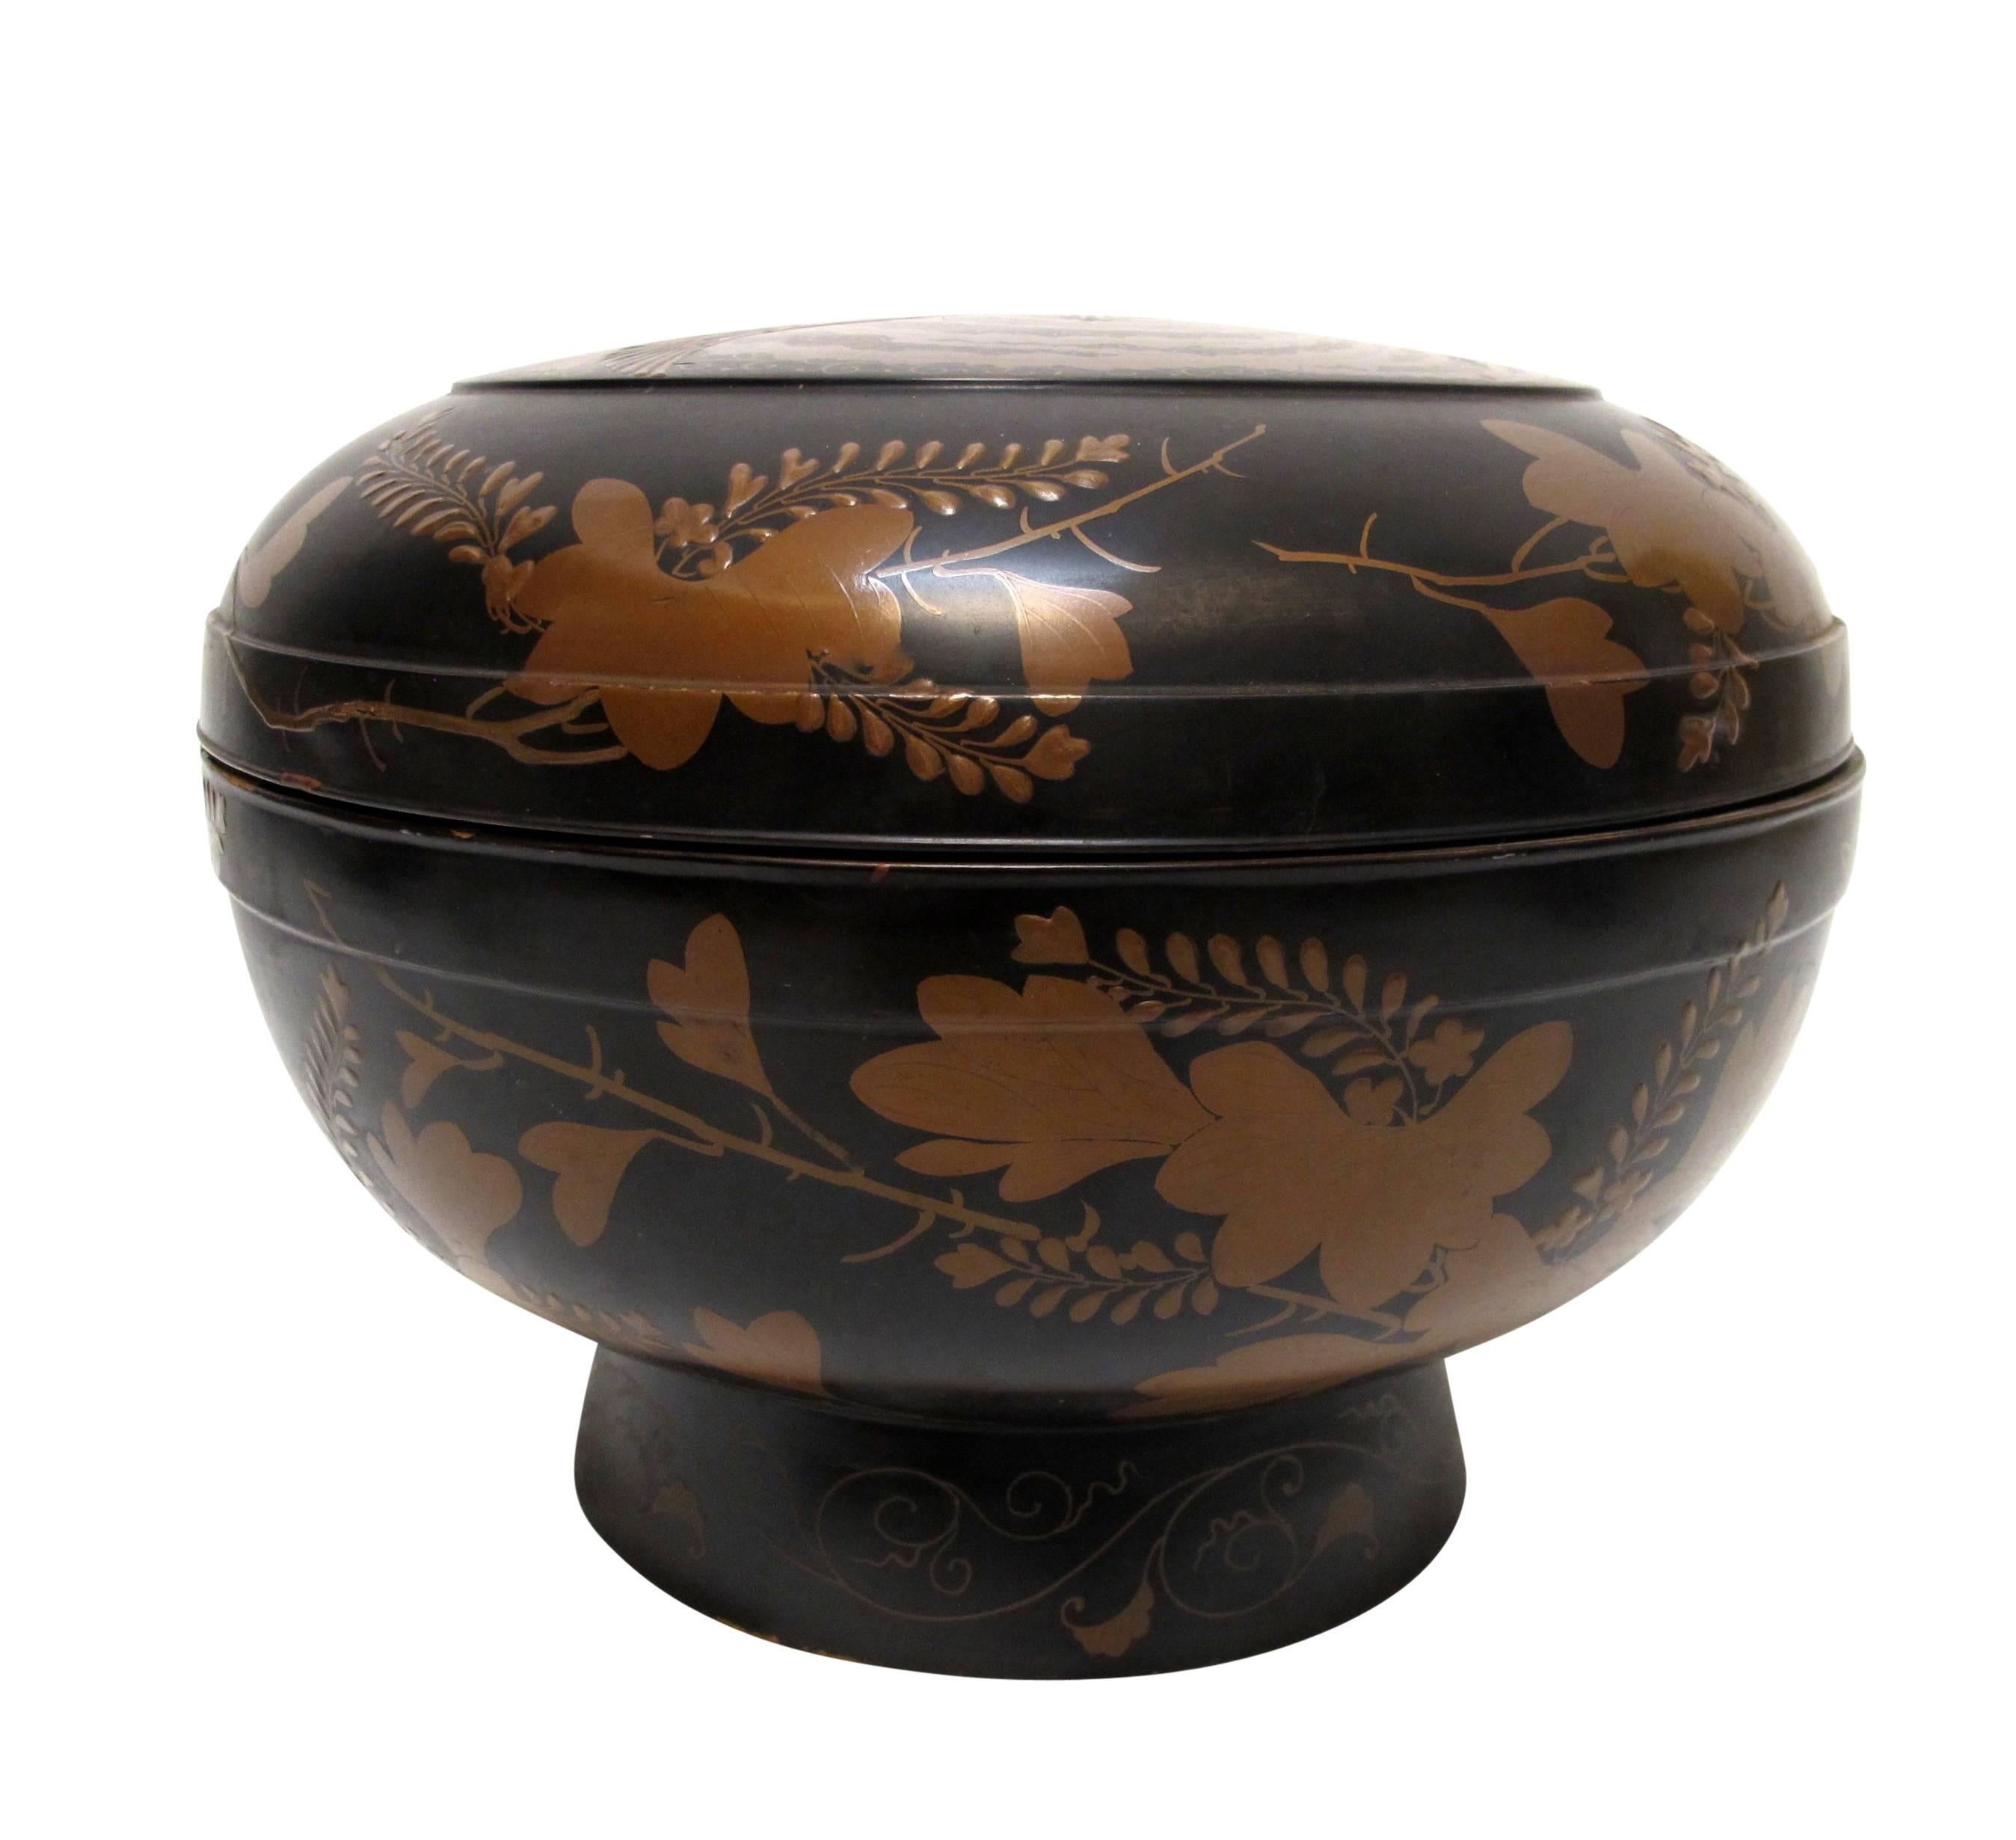 Grand bol à riz ou à soupe laqué d'époque Meiji. Magnifique décoration peinte à la main à l'intérieur et à l'extérieur.